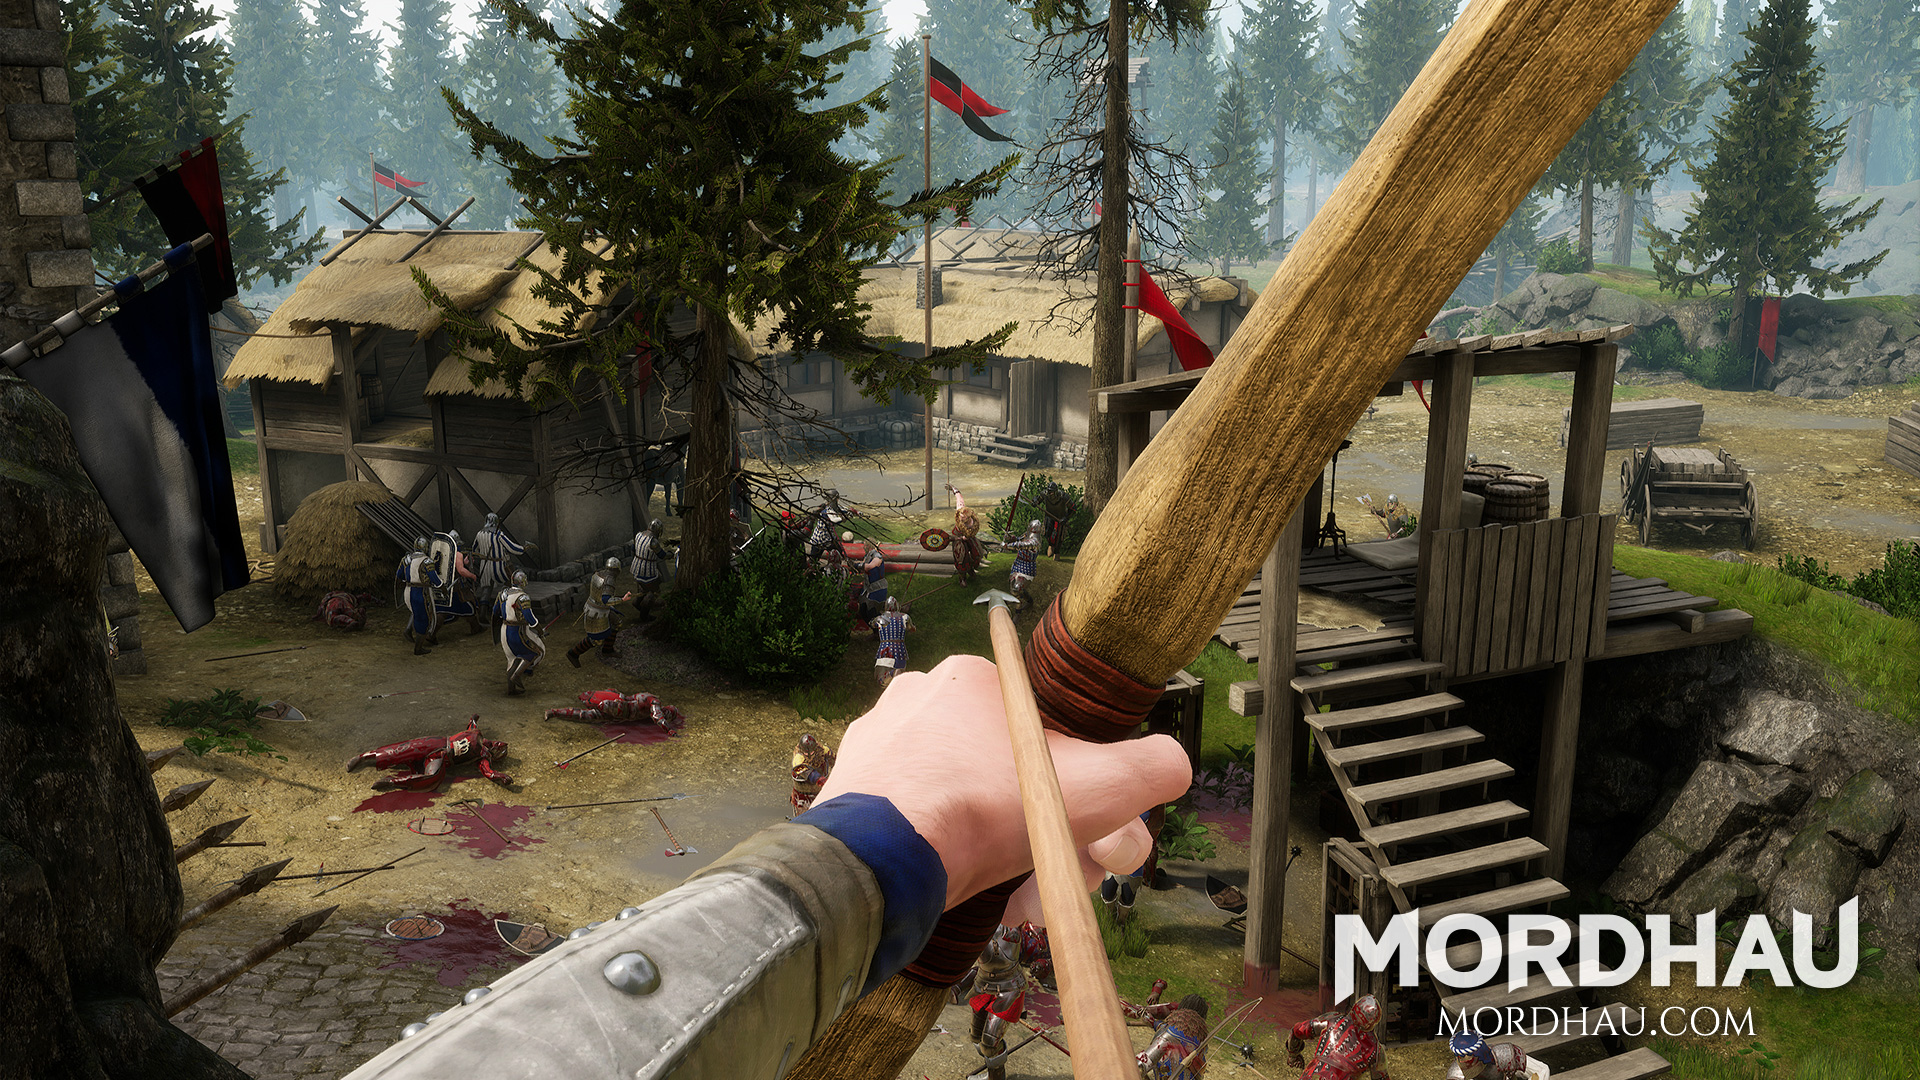 Mordhau: Multiplayer medieval melee game